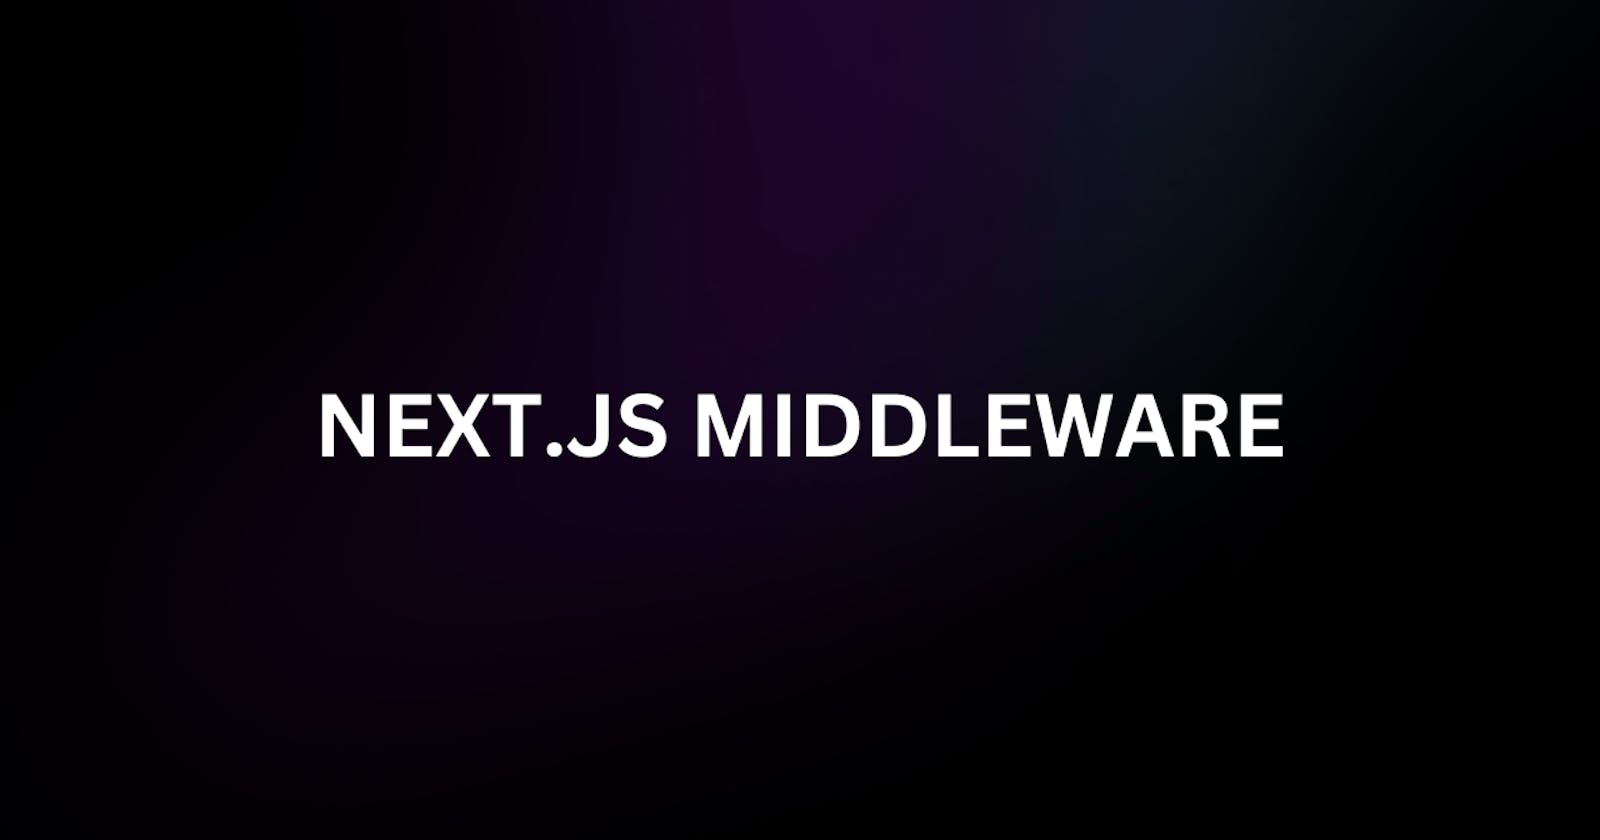 Simplifying Next.js Middleware